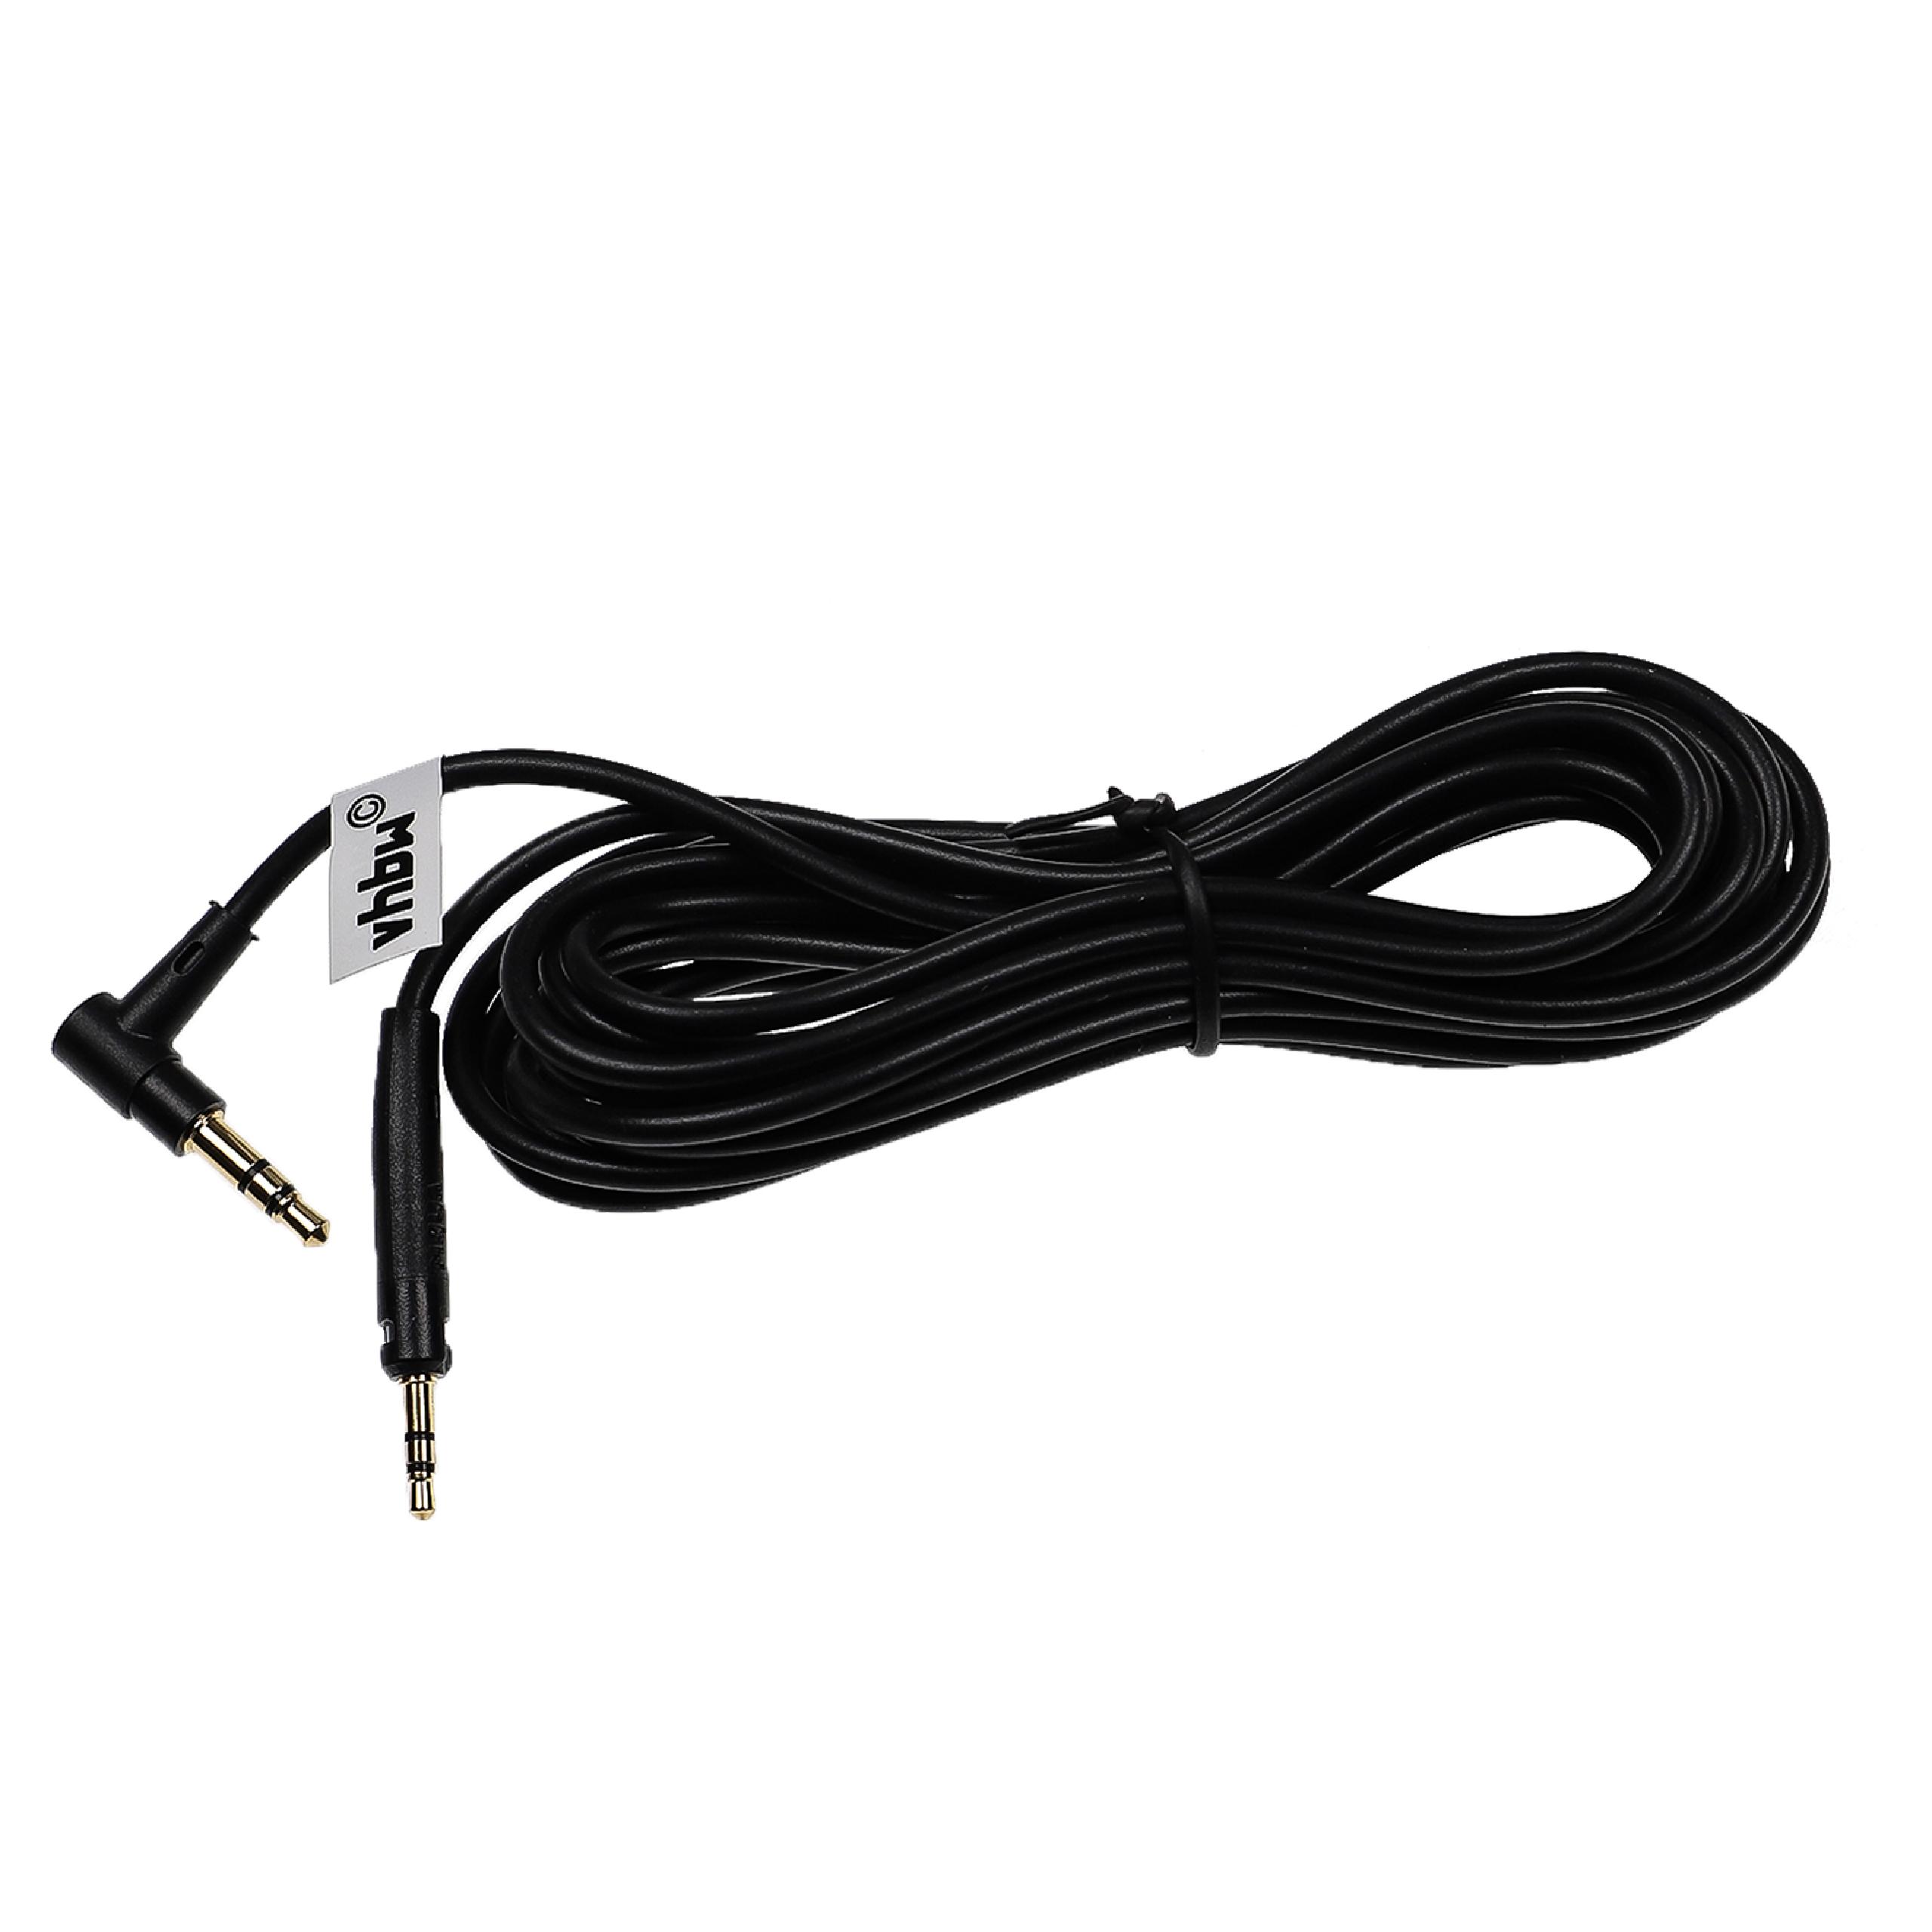 Cable audio AUX a conector jack de 3,5 mm para auriculares AKG, etc.